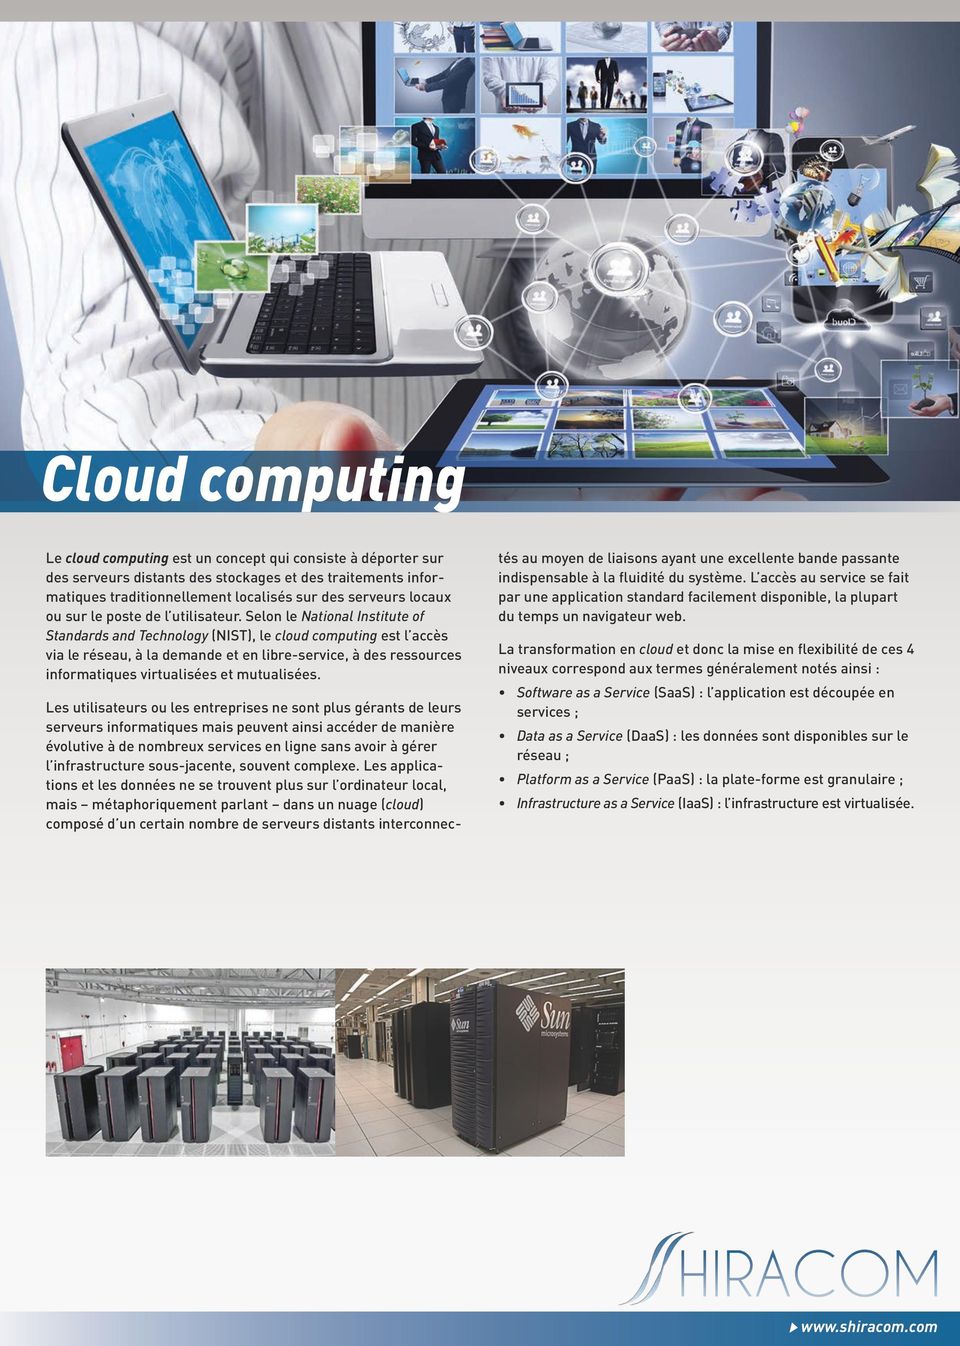 Selon le National Institute of Standards and Technology (NIST), le cloud computing est l accès via le réseau, à la demande et en libre-service, à des ressources informatiques virtualisées et